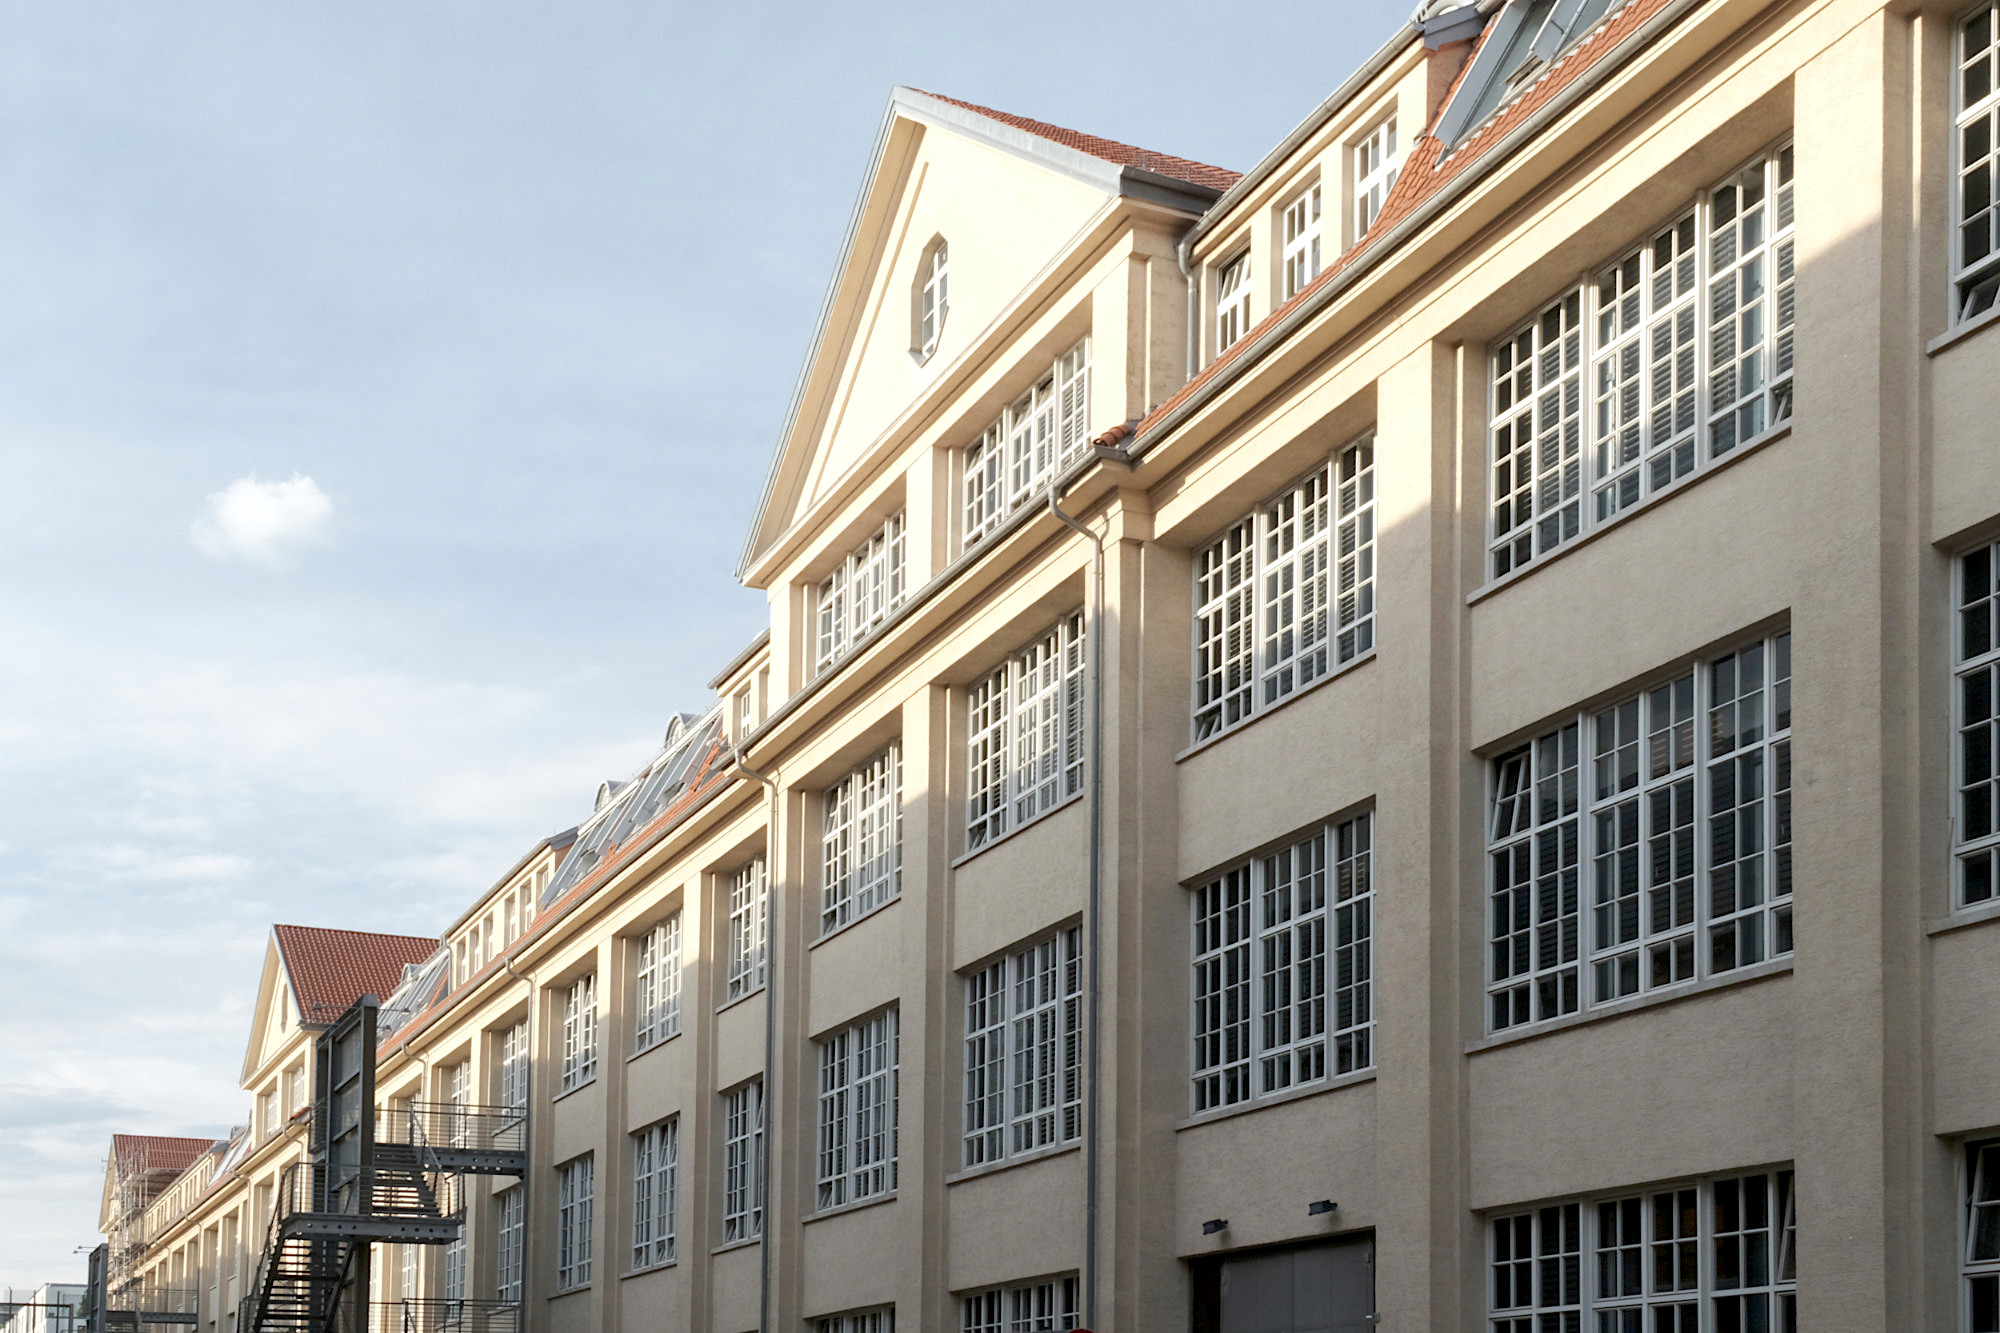 Der Hallenbau A der ehemaligen Munitionsfabrik entstand 1918 nach einem Entwurf von Philipp Jakob Manz. Die Planungen für die Umnutzung zum 1997 eröffneten ZKM erfolgten durch Schweger + Partner.